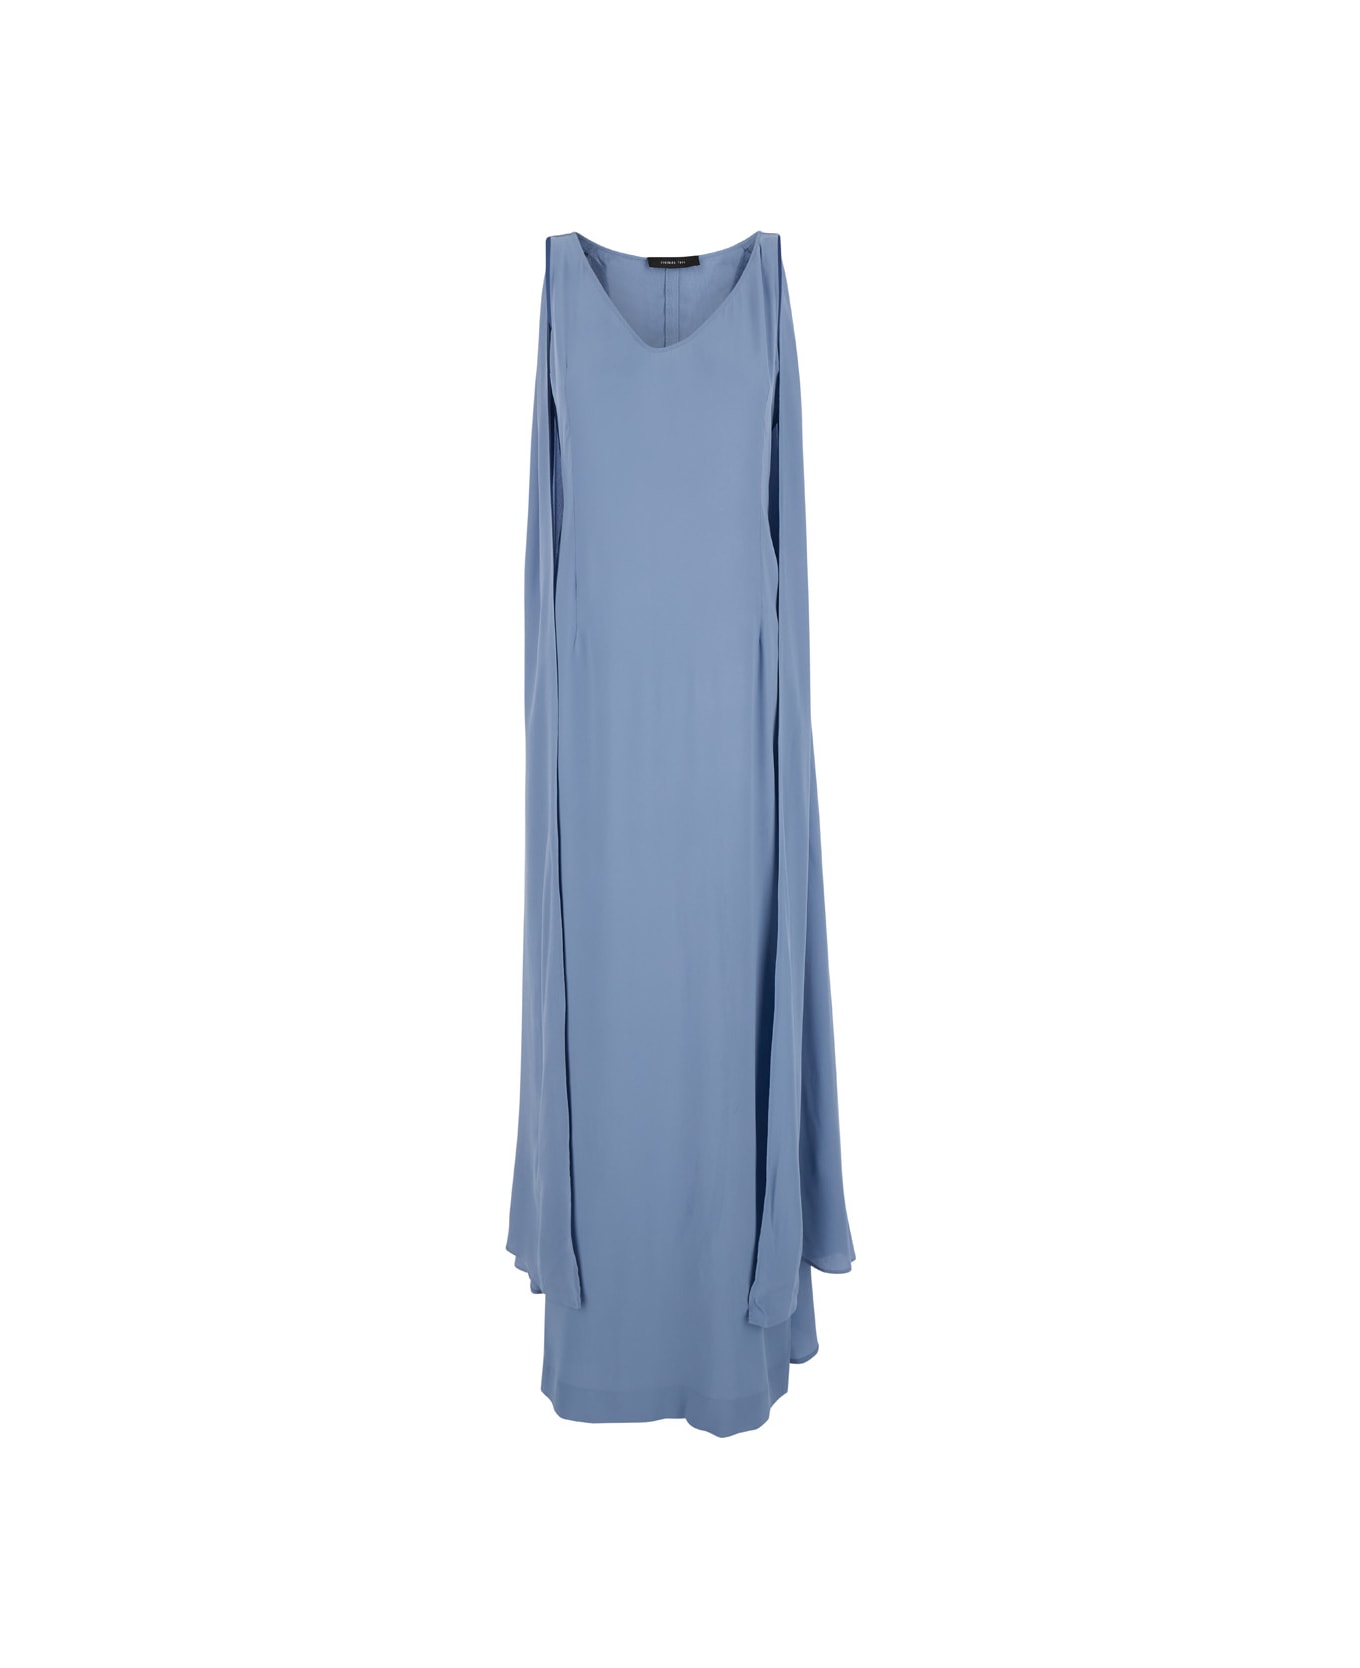 Federica Tosi Light Blue Maxi Dress With Cape In Silk Blend Woman - Blu